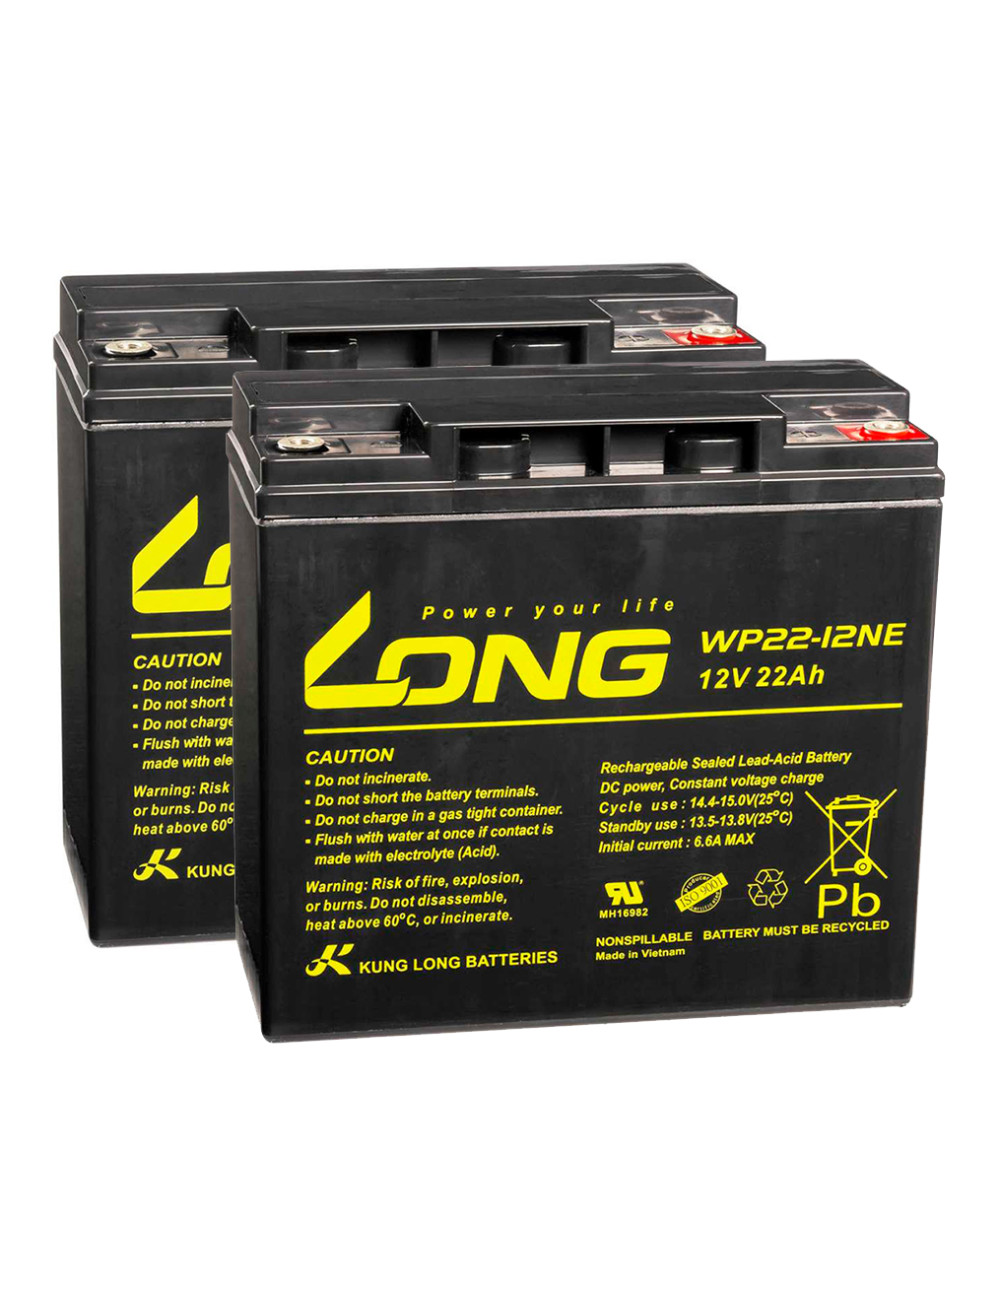 Pack 2 baterías para Invacare Colibrí de 12V 22Ah C20 ciclo profundo Long WP22-12NE - 2xWP22-12NE -  -  - 1